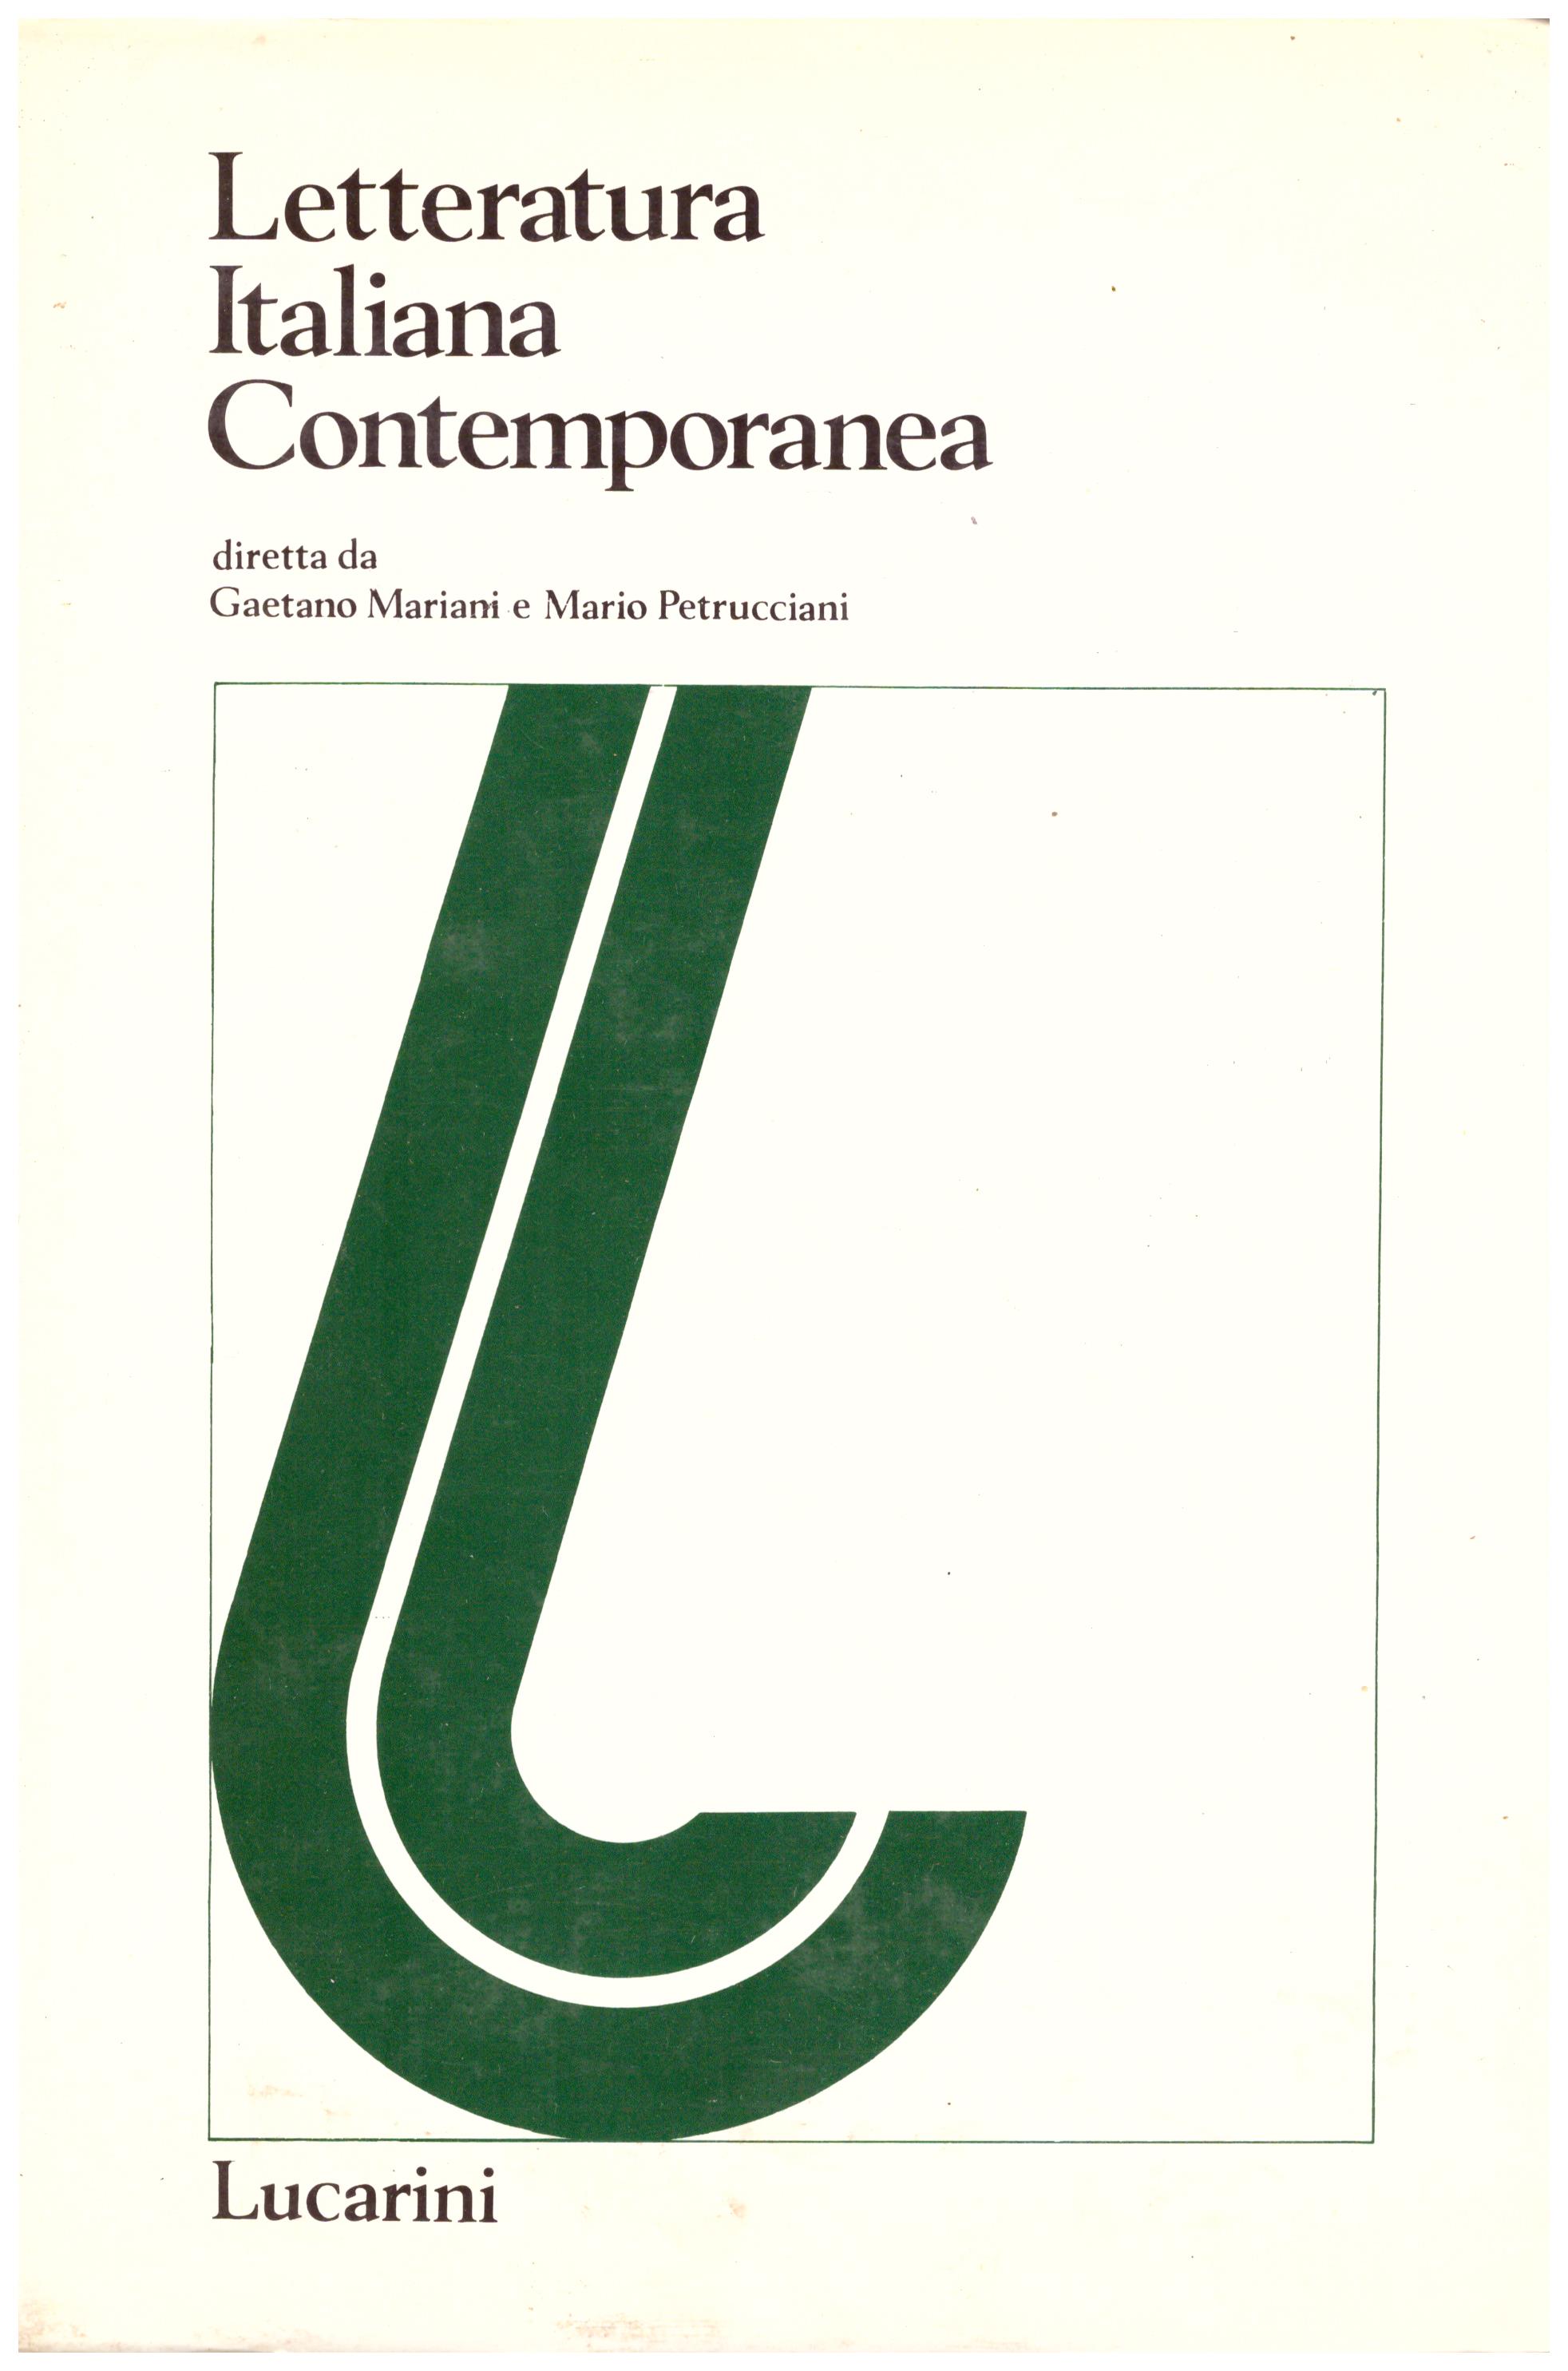 Titolo: Letteratura italiana contemporanea II Appendice 1982 Autore: AA.VV. Editore: Lucarini, 1982